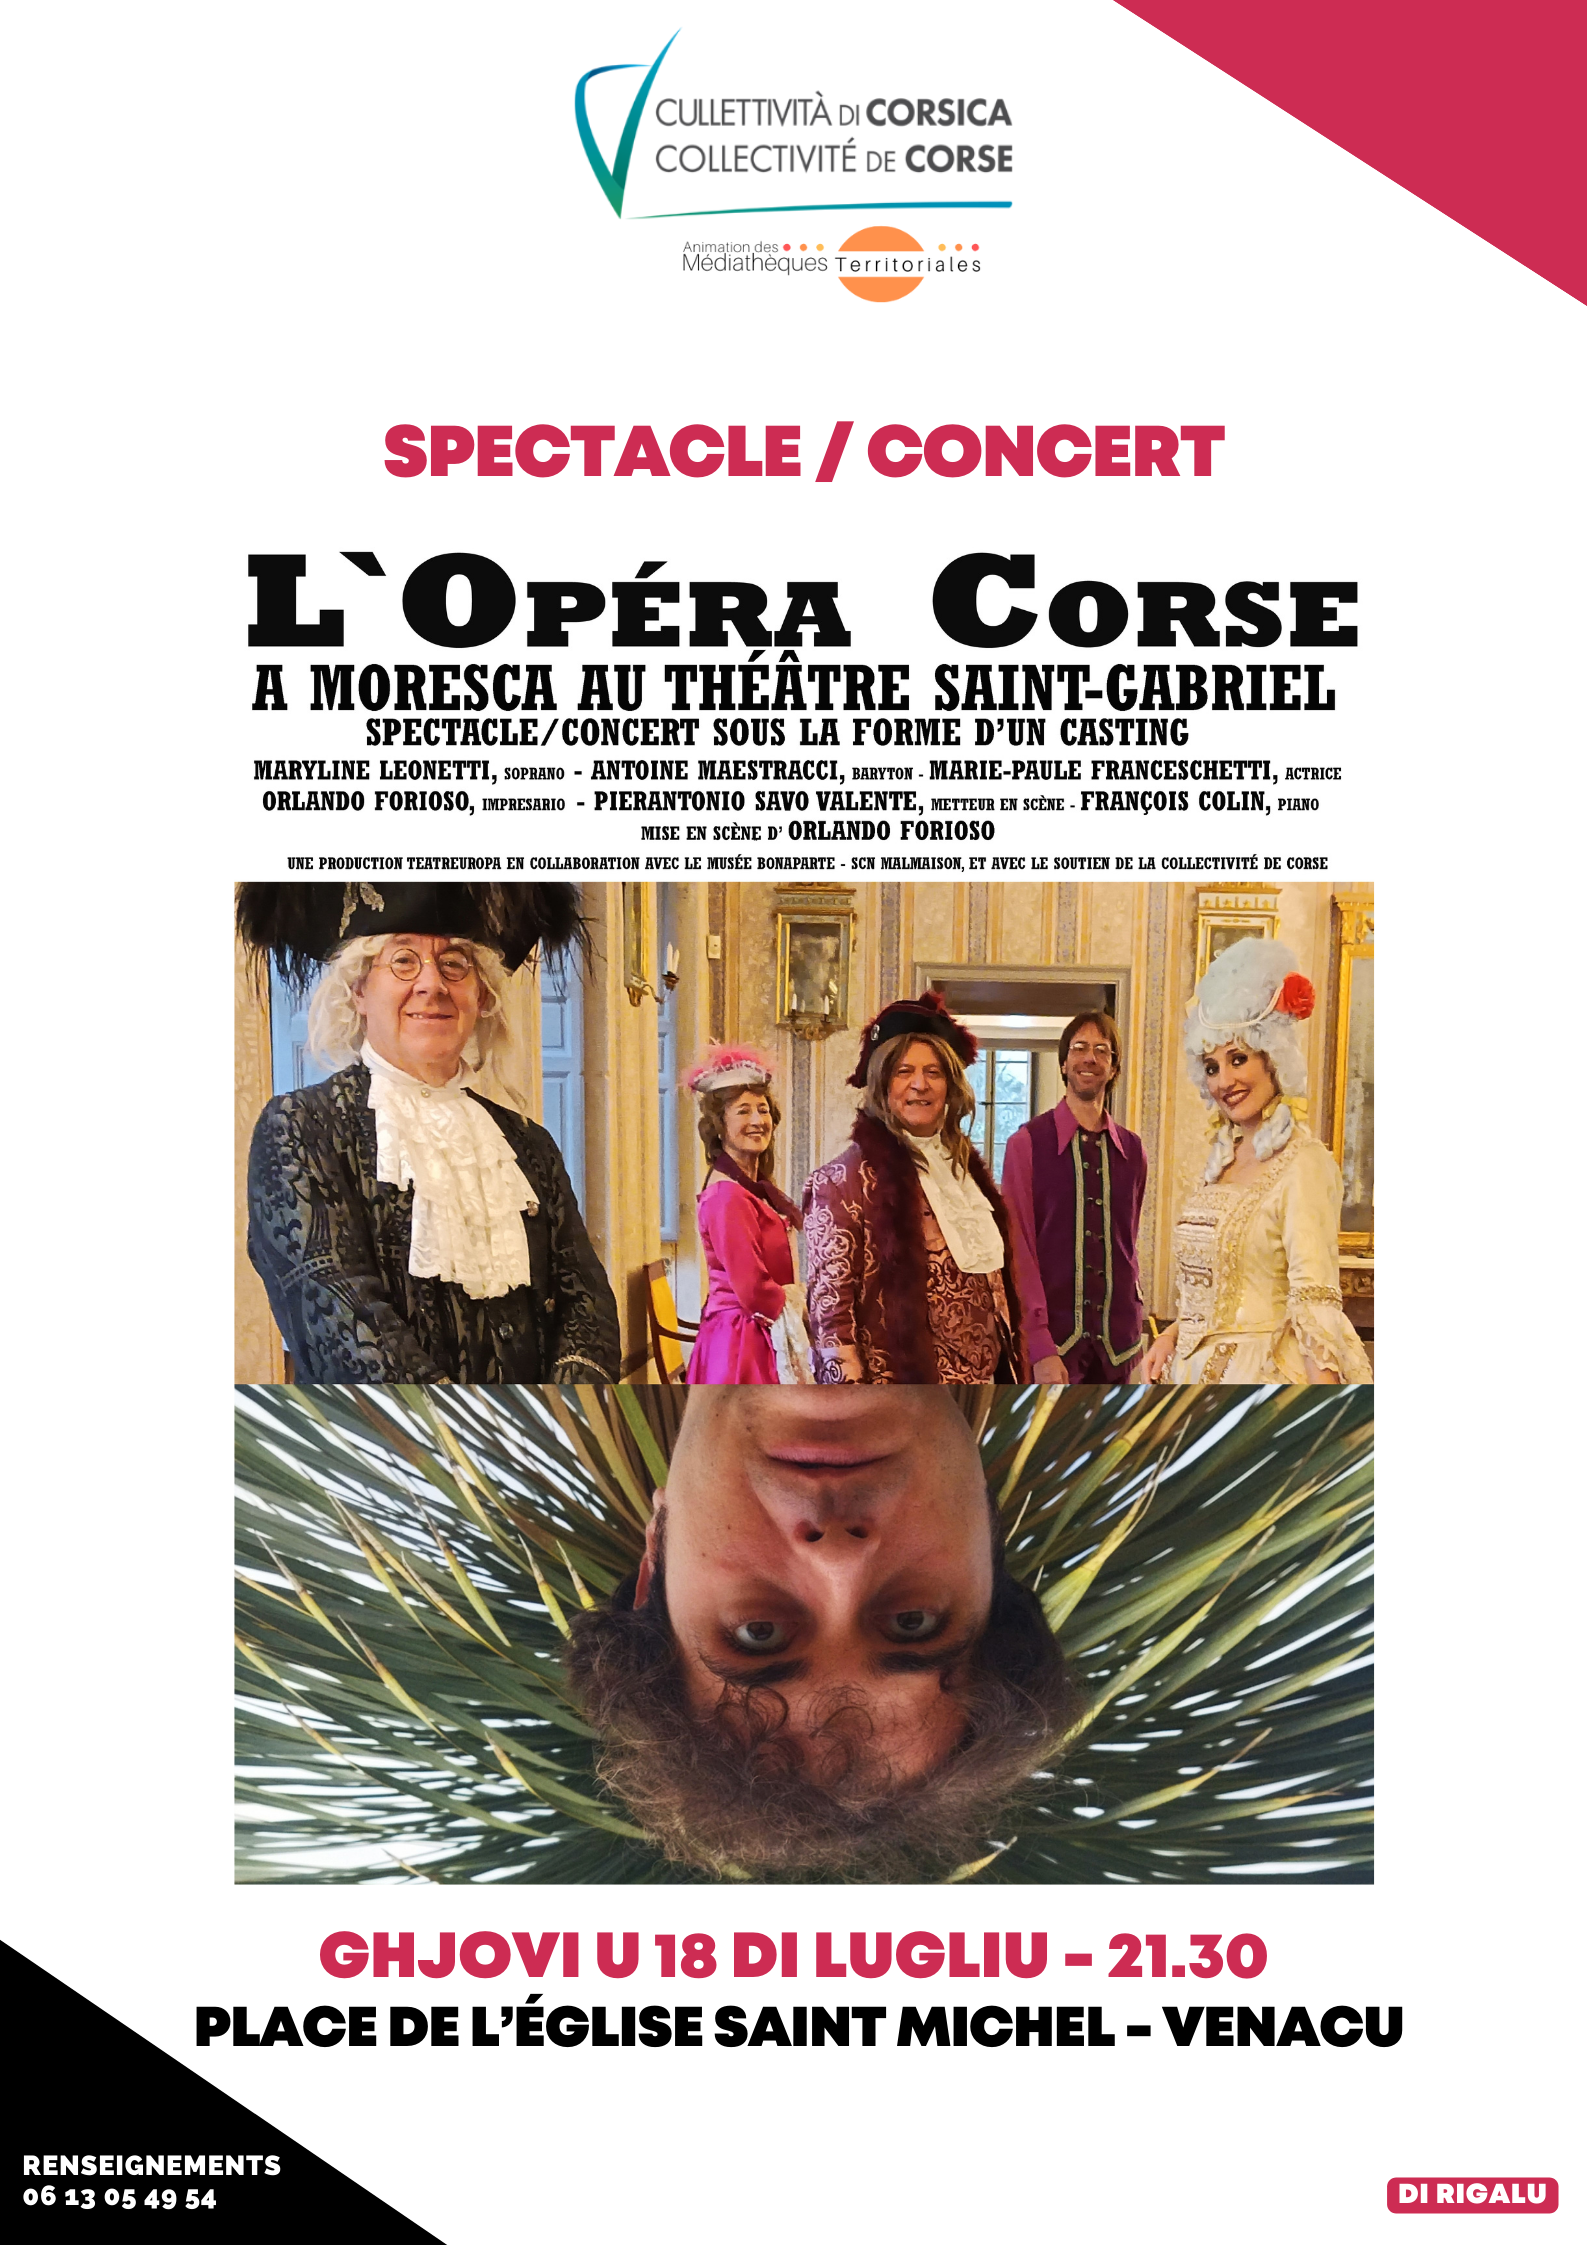 Spectacle / Concert : "L'Opéra Corse" mis en scène d’Orlando Furioso - Place de l’église Saint Michel - Venacu